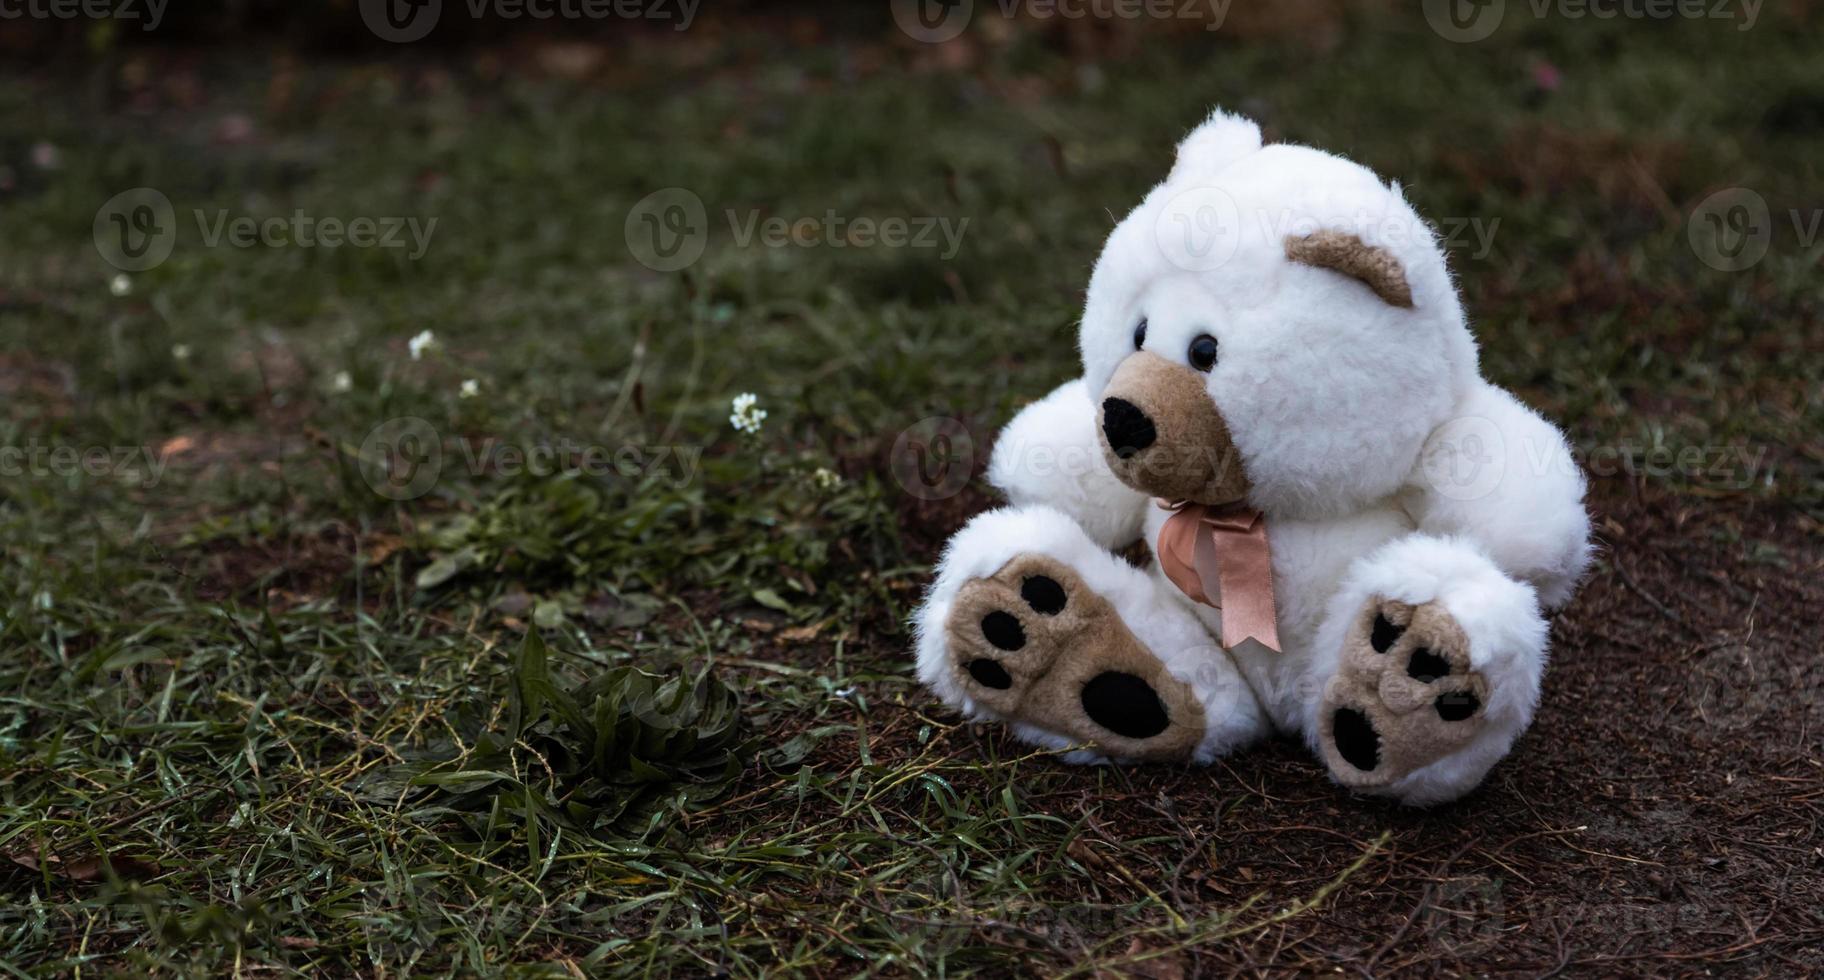 verloren verlaten zachte pluche teddybeer foto